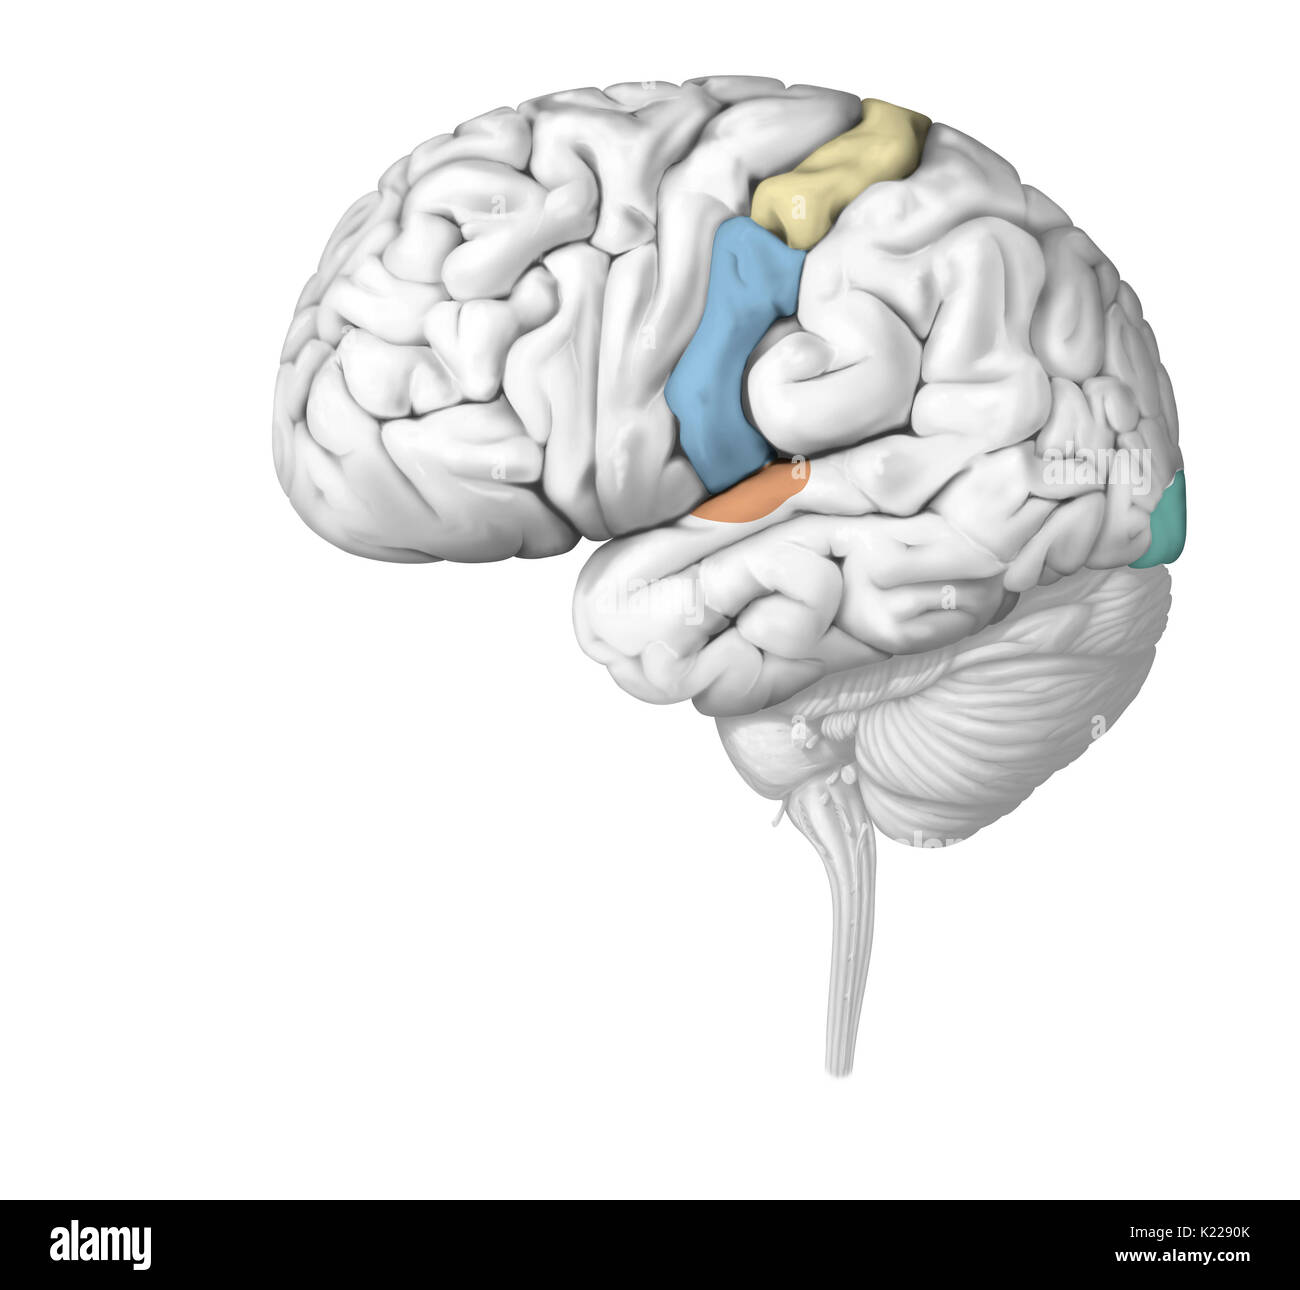 Die nervenimpulse sind in den Zonen des Gehirns, die spezifisch für jeden Sinn analysiert. Verletzung eines Sinnesorgans kann ernsthaft sein Funktionieren beeinträchtigen. Stockfoto